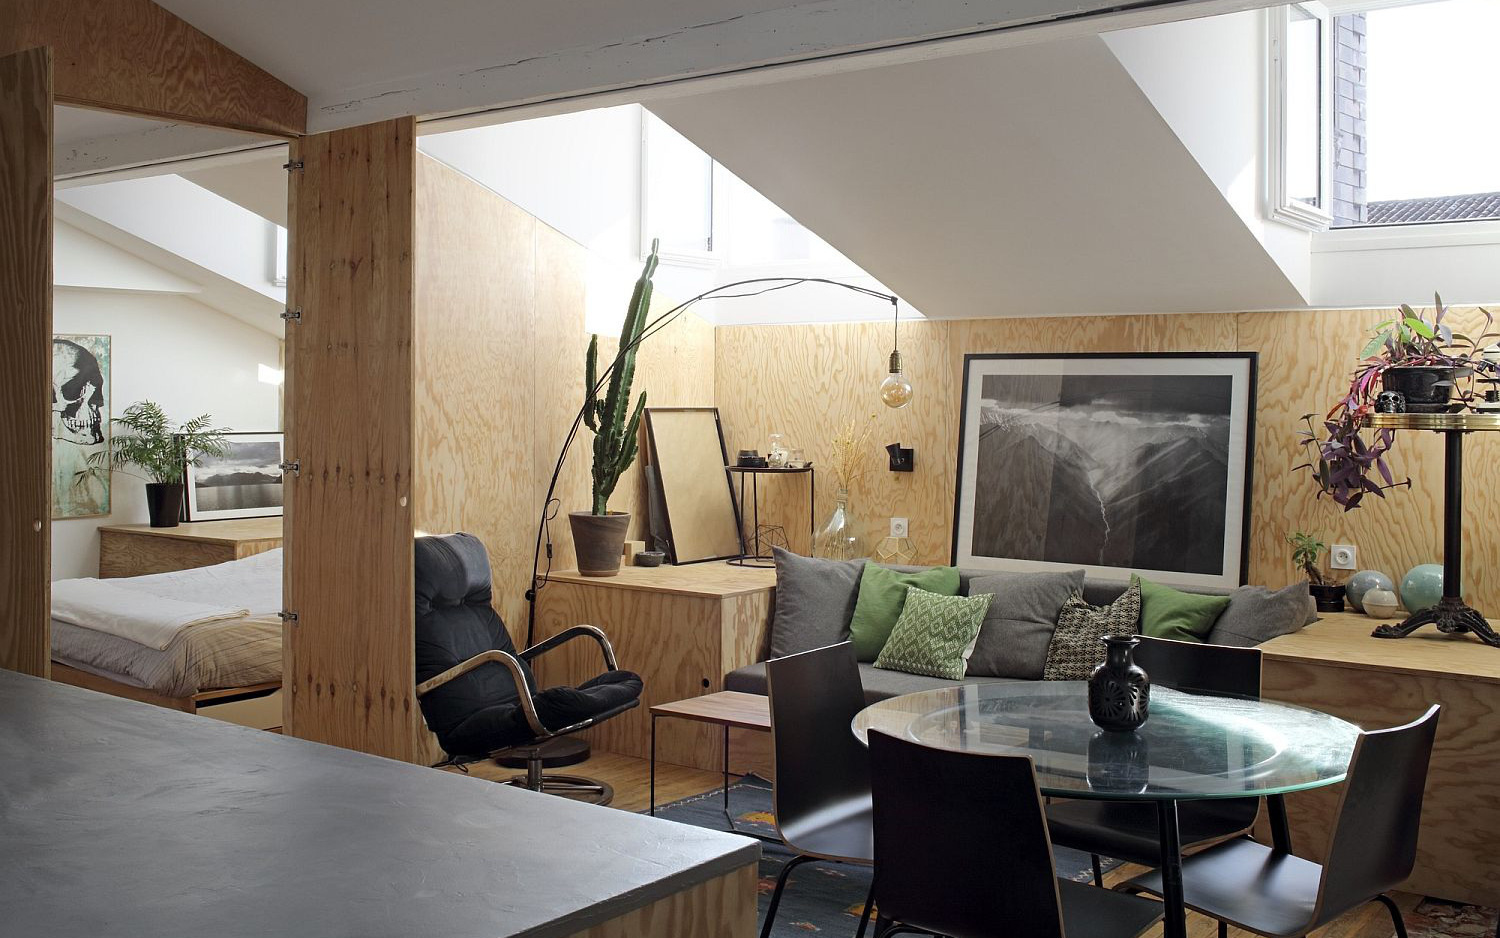 Căn hộ 50m² đẹp ấn tượng với giải pháp nới rộng không gian nhờ chất liệu gỗ